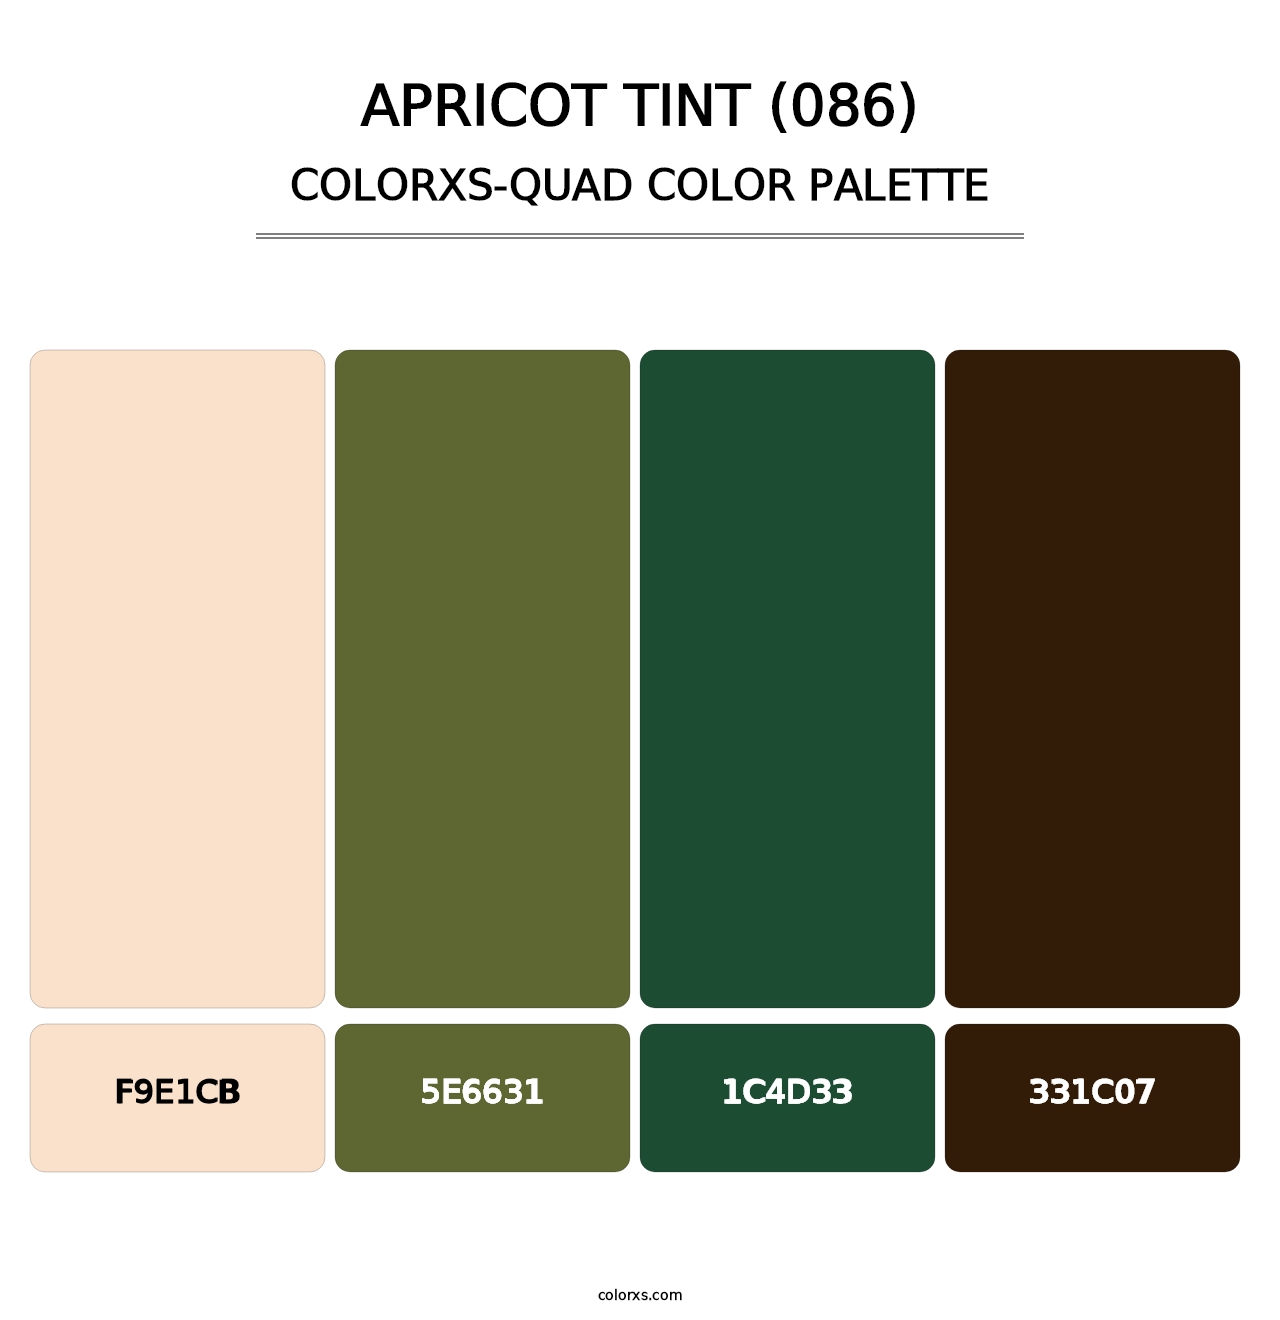 Apricot Tint (086) - Colorxs Quad Palette